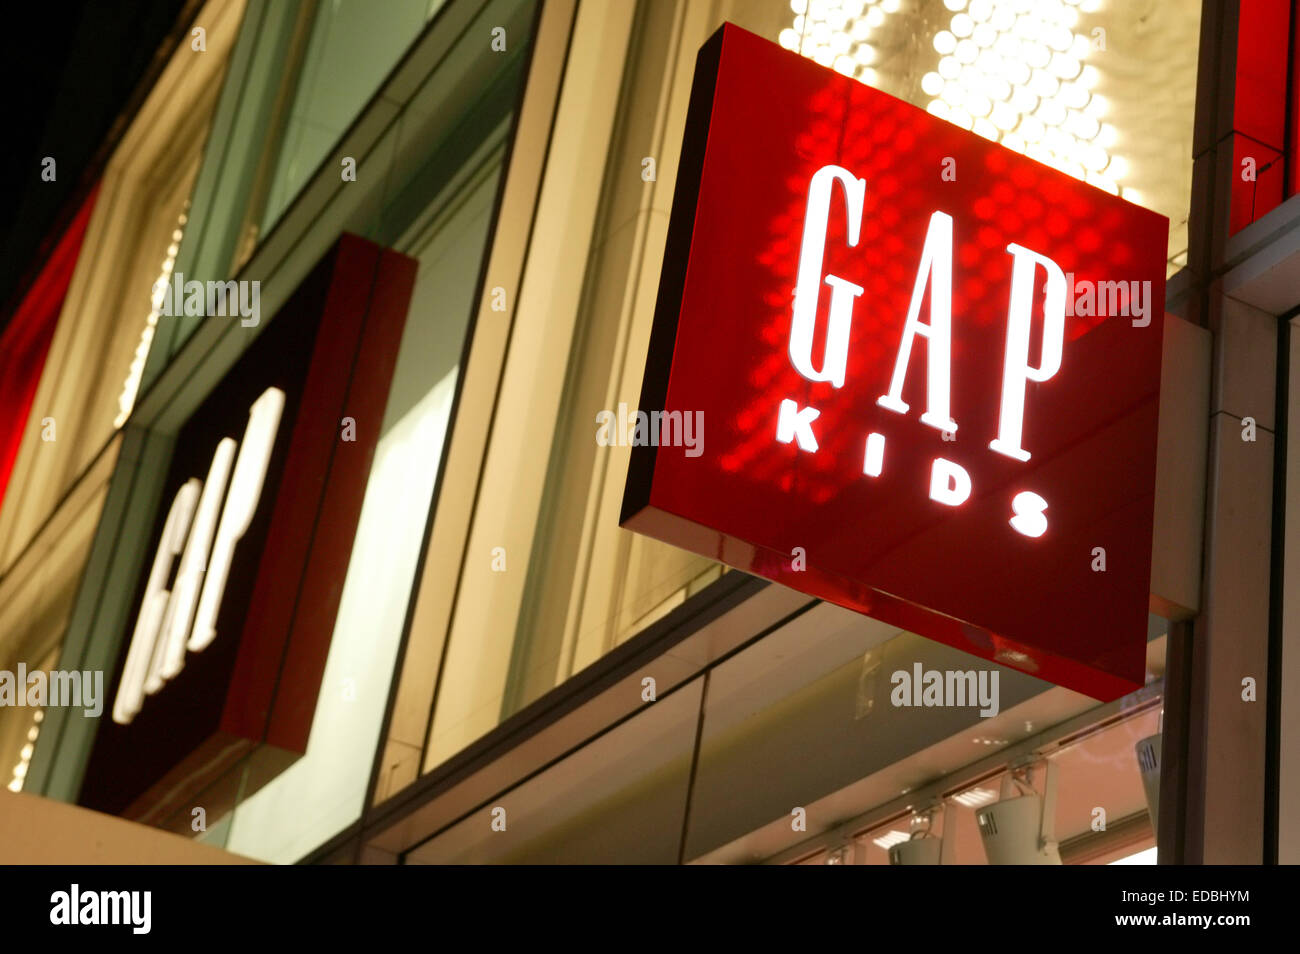 External shot of a GAP store. Stock Photo